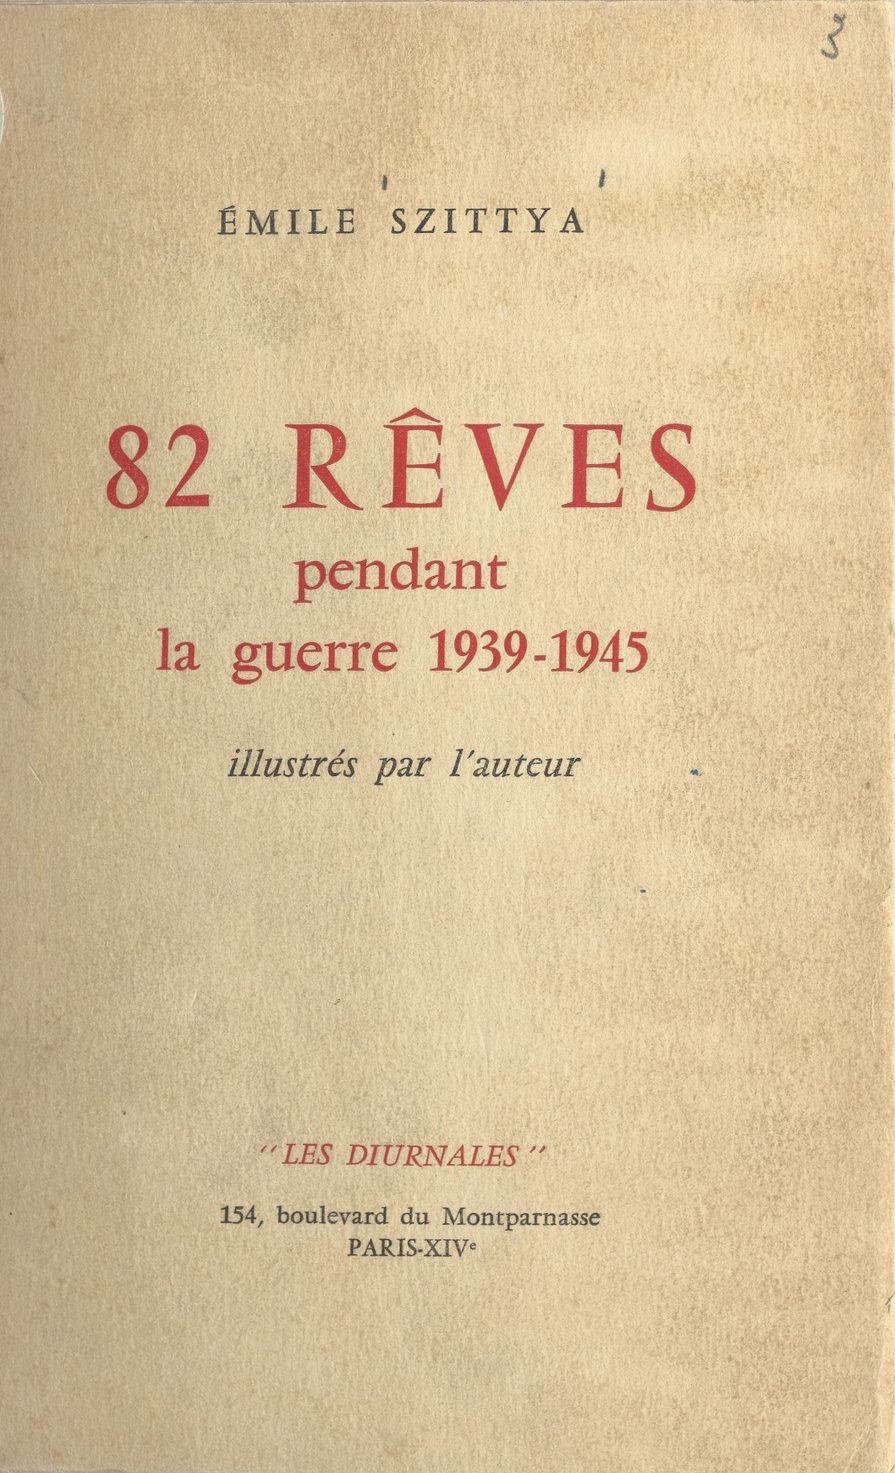 82 álom a háború alatt (1939-1945), Szittya Emil álomgyűjteményének első francia kiadása